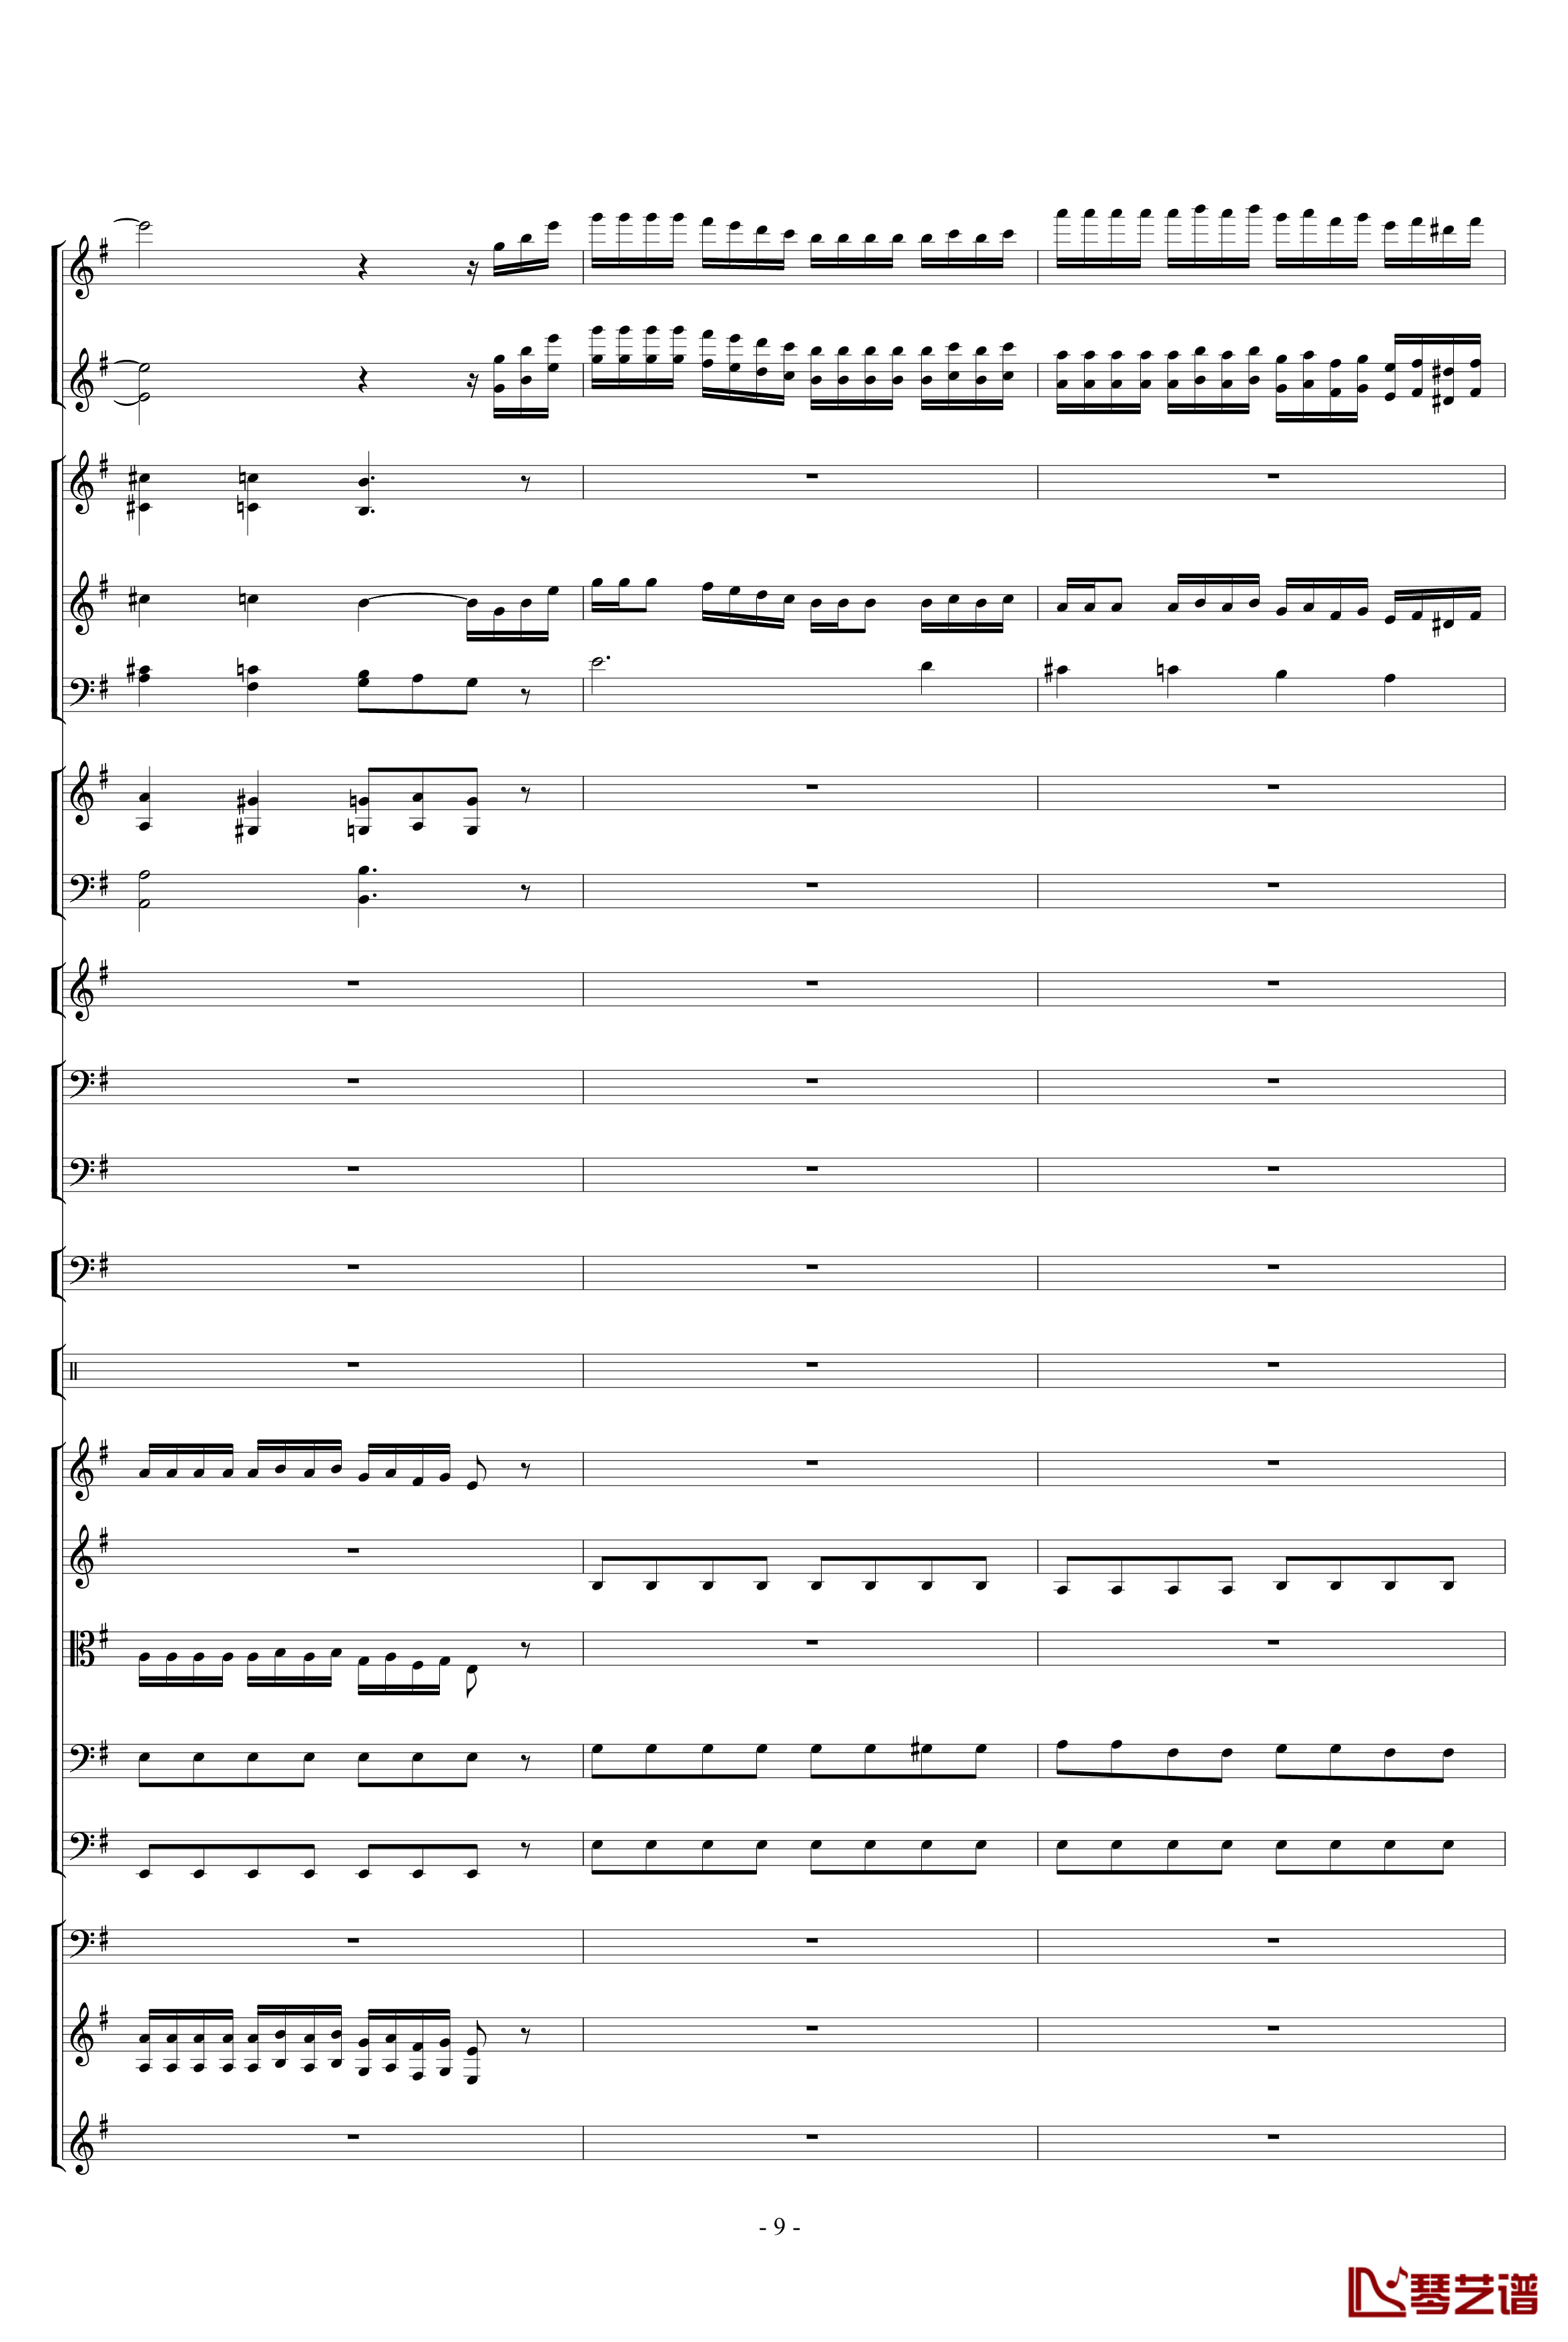 胡桃夹子组曲之进行曲钢琴谱-柴科夫斯基-Peter Ilyich Tchaikovsky9